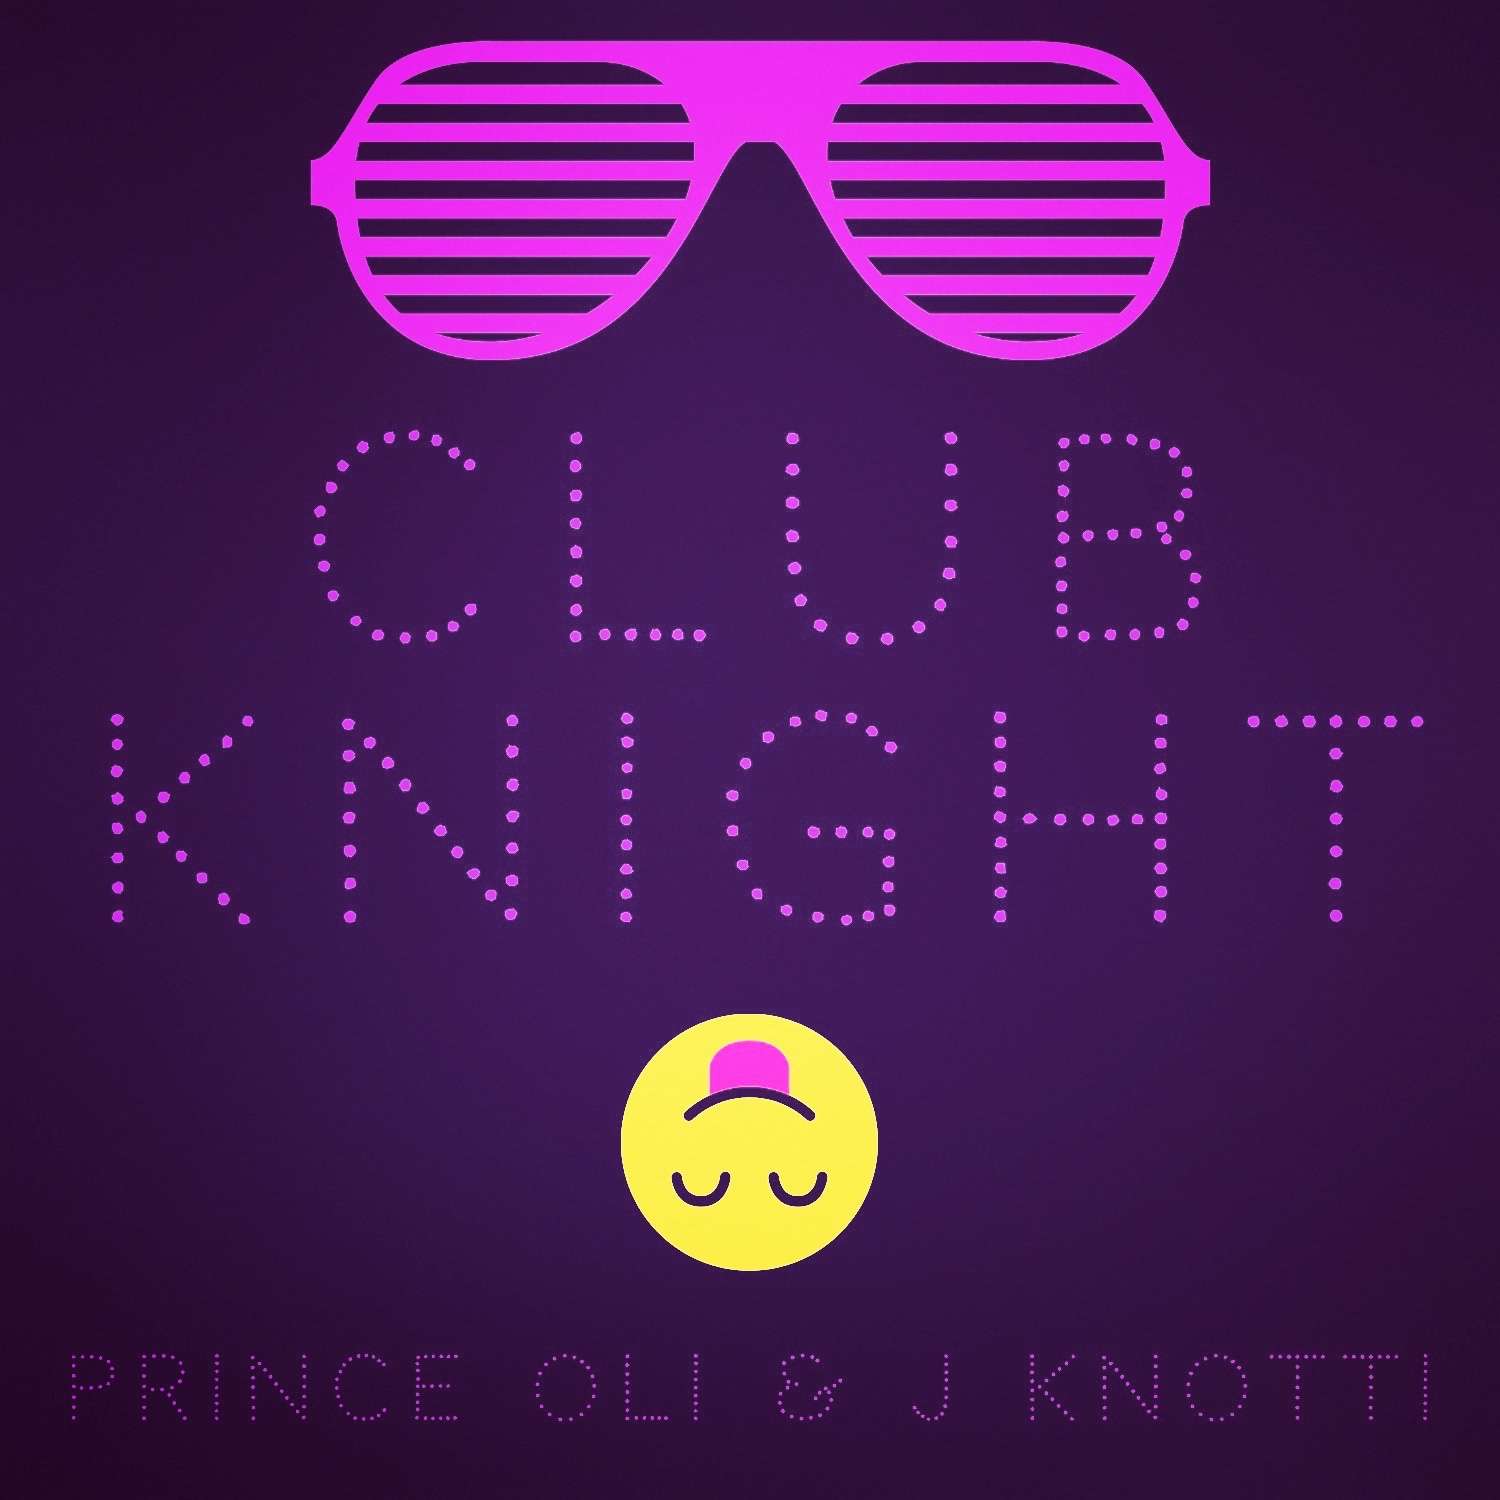 Prince Oli & J Knotti Drop Club Banger In “Club Knight”